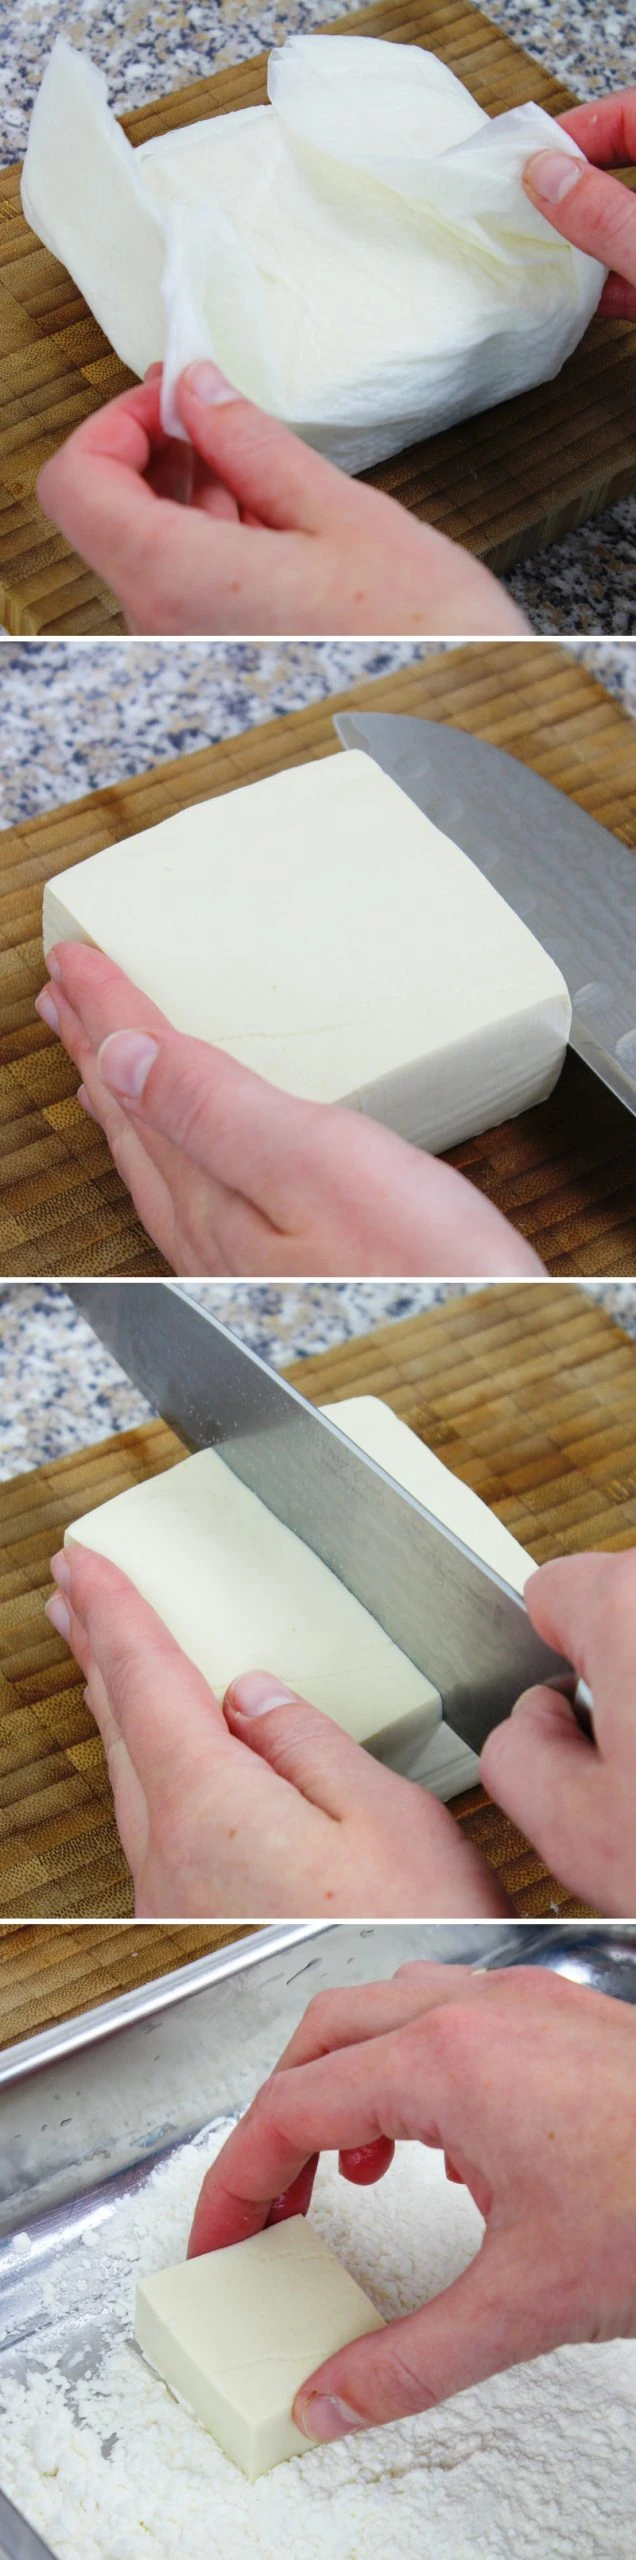 Agedashi Tofu Schritt 6 Tofu vorbereiten